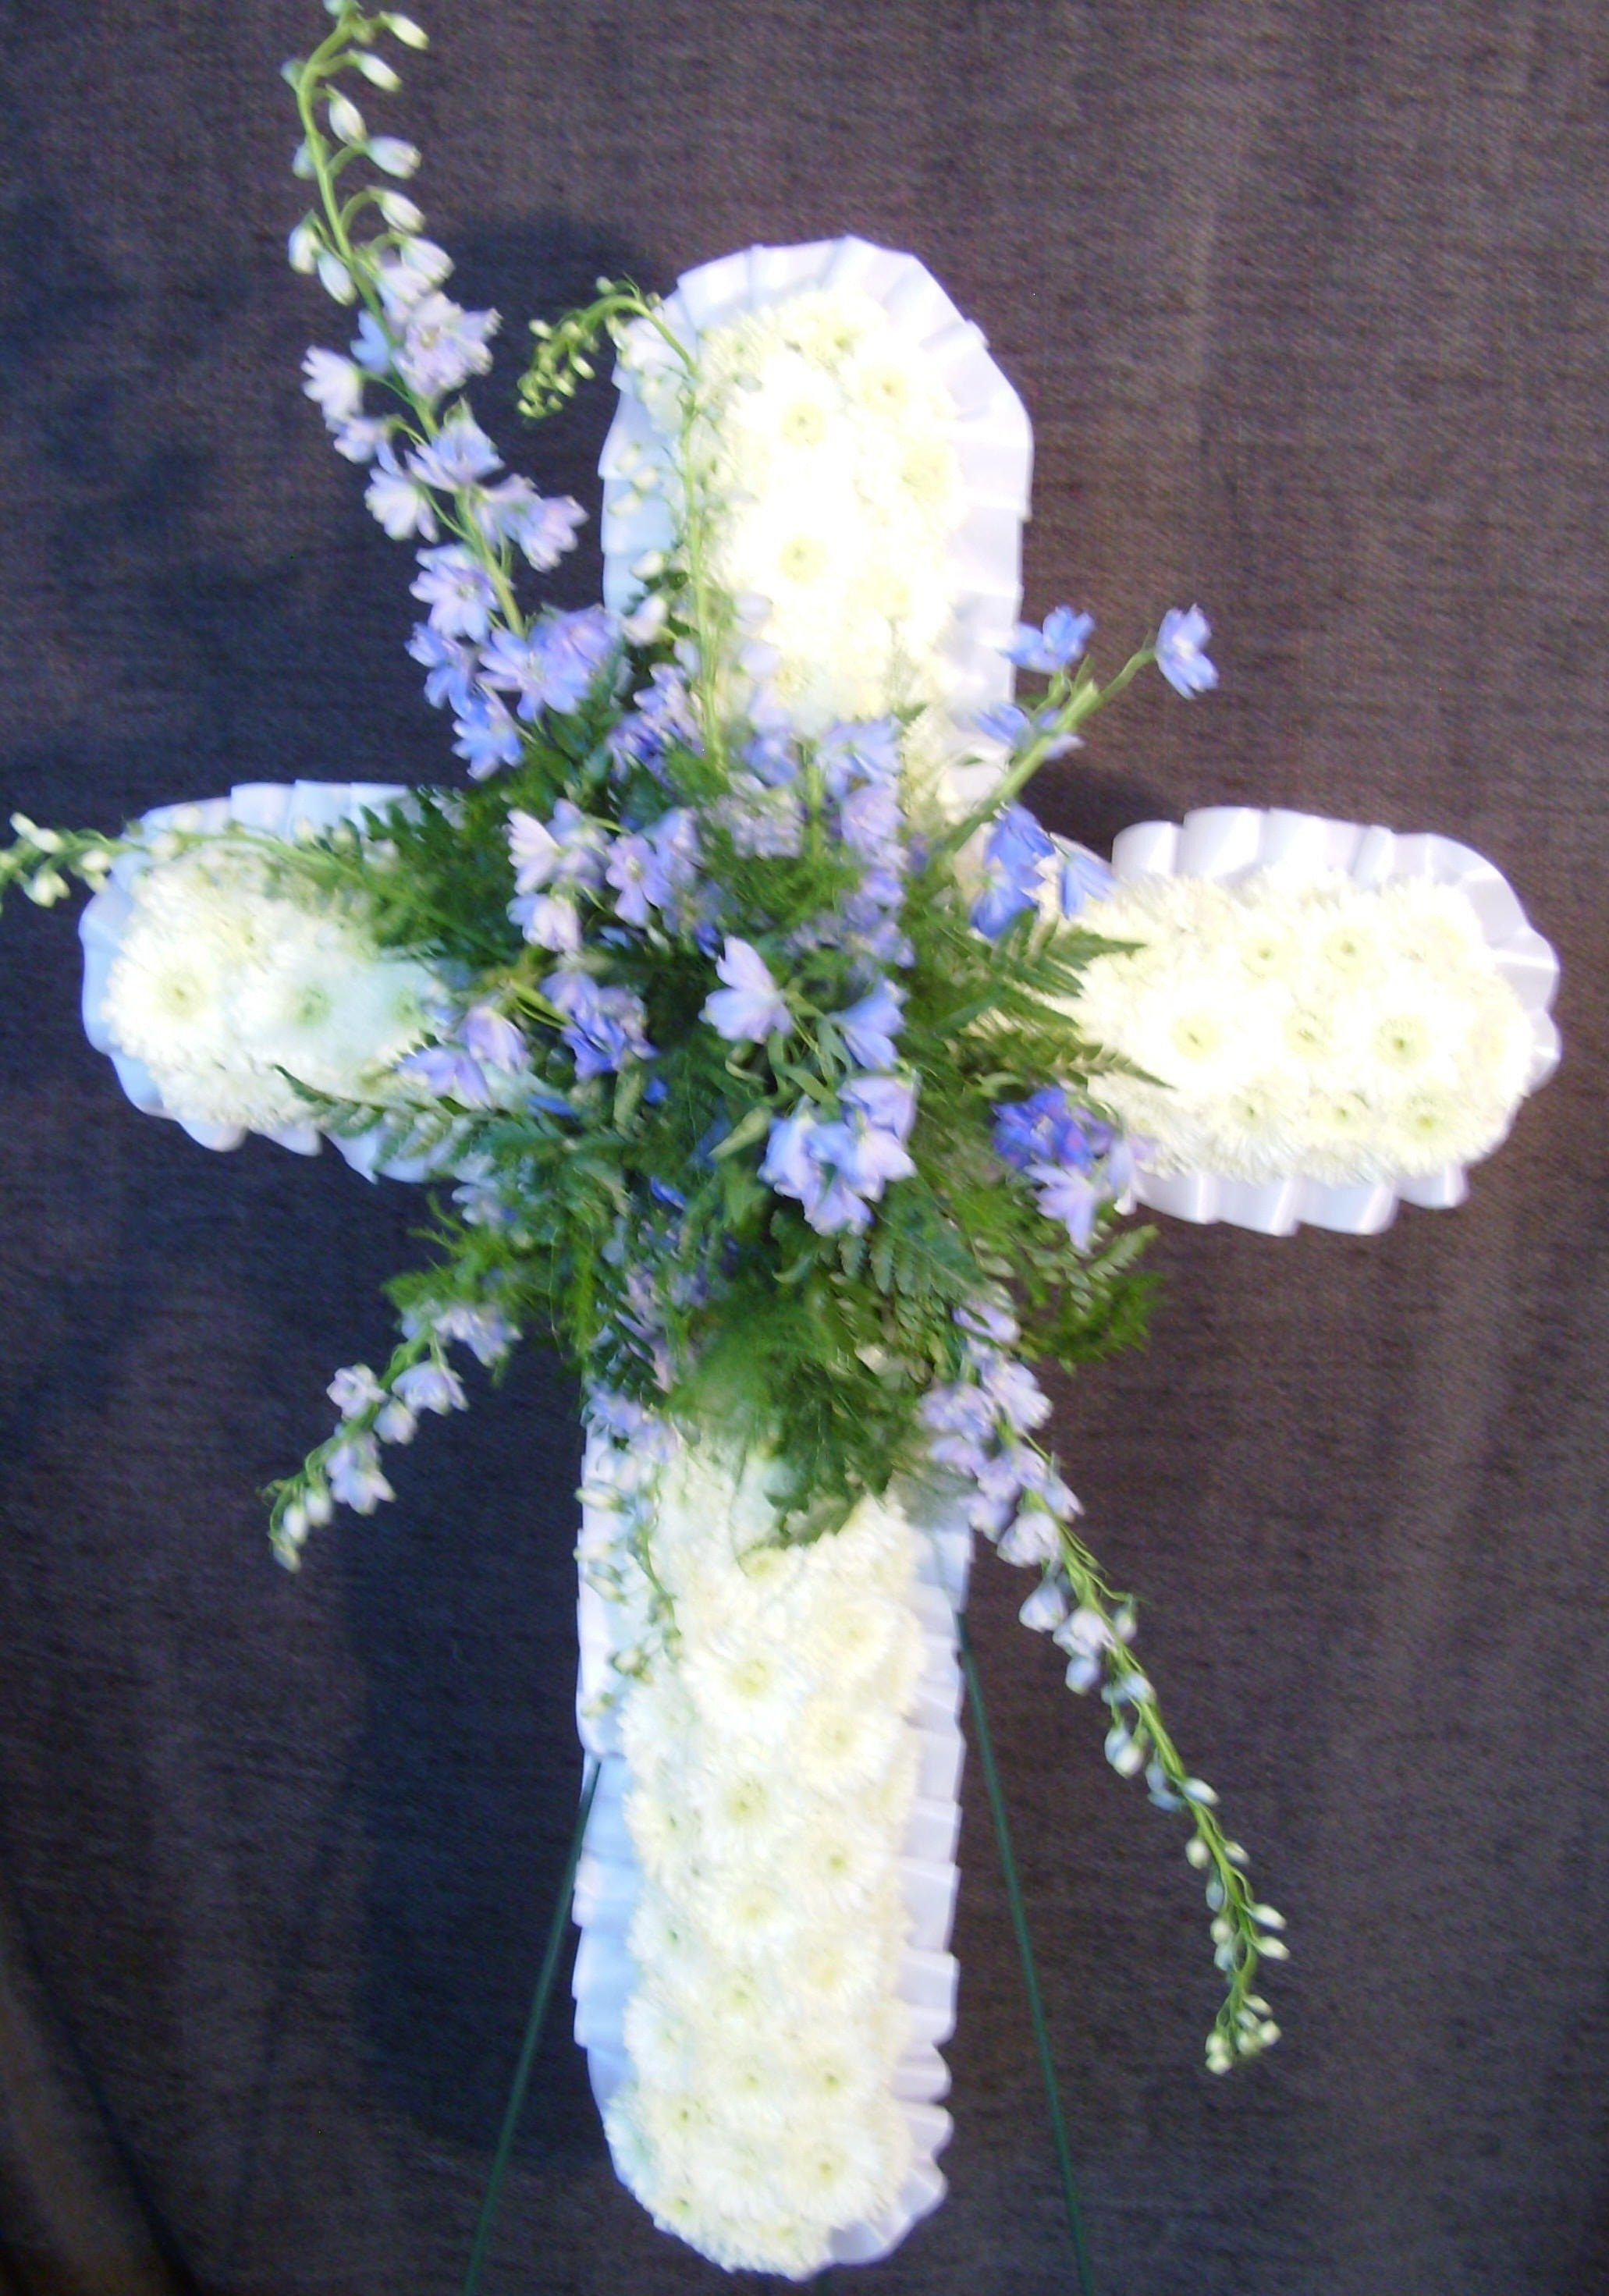 17 Ideal Ftd Cross Vase 2022 free download ftd cross vase of floral tributes funeral pinterest floral funeral and funeral throughout floral tributes